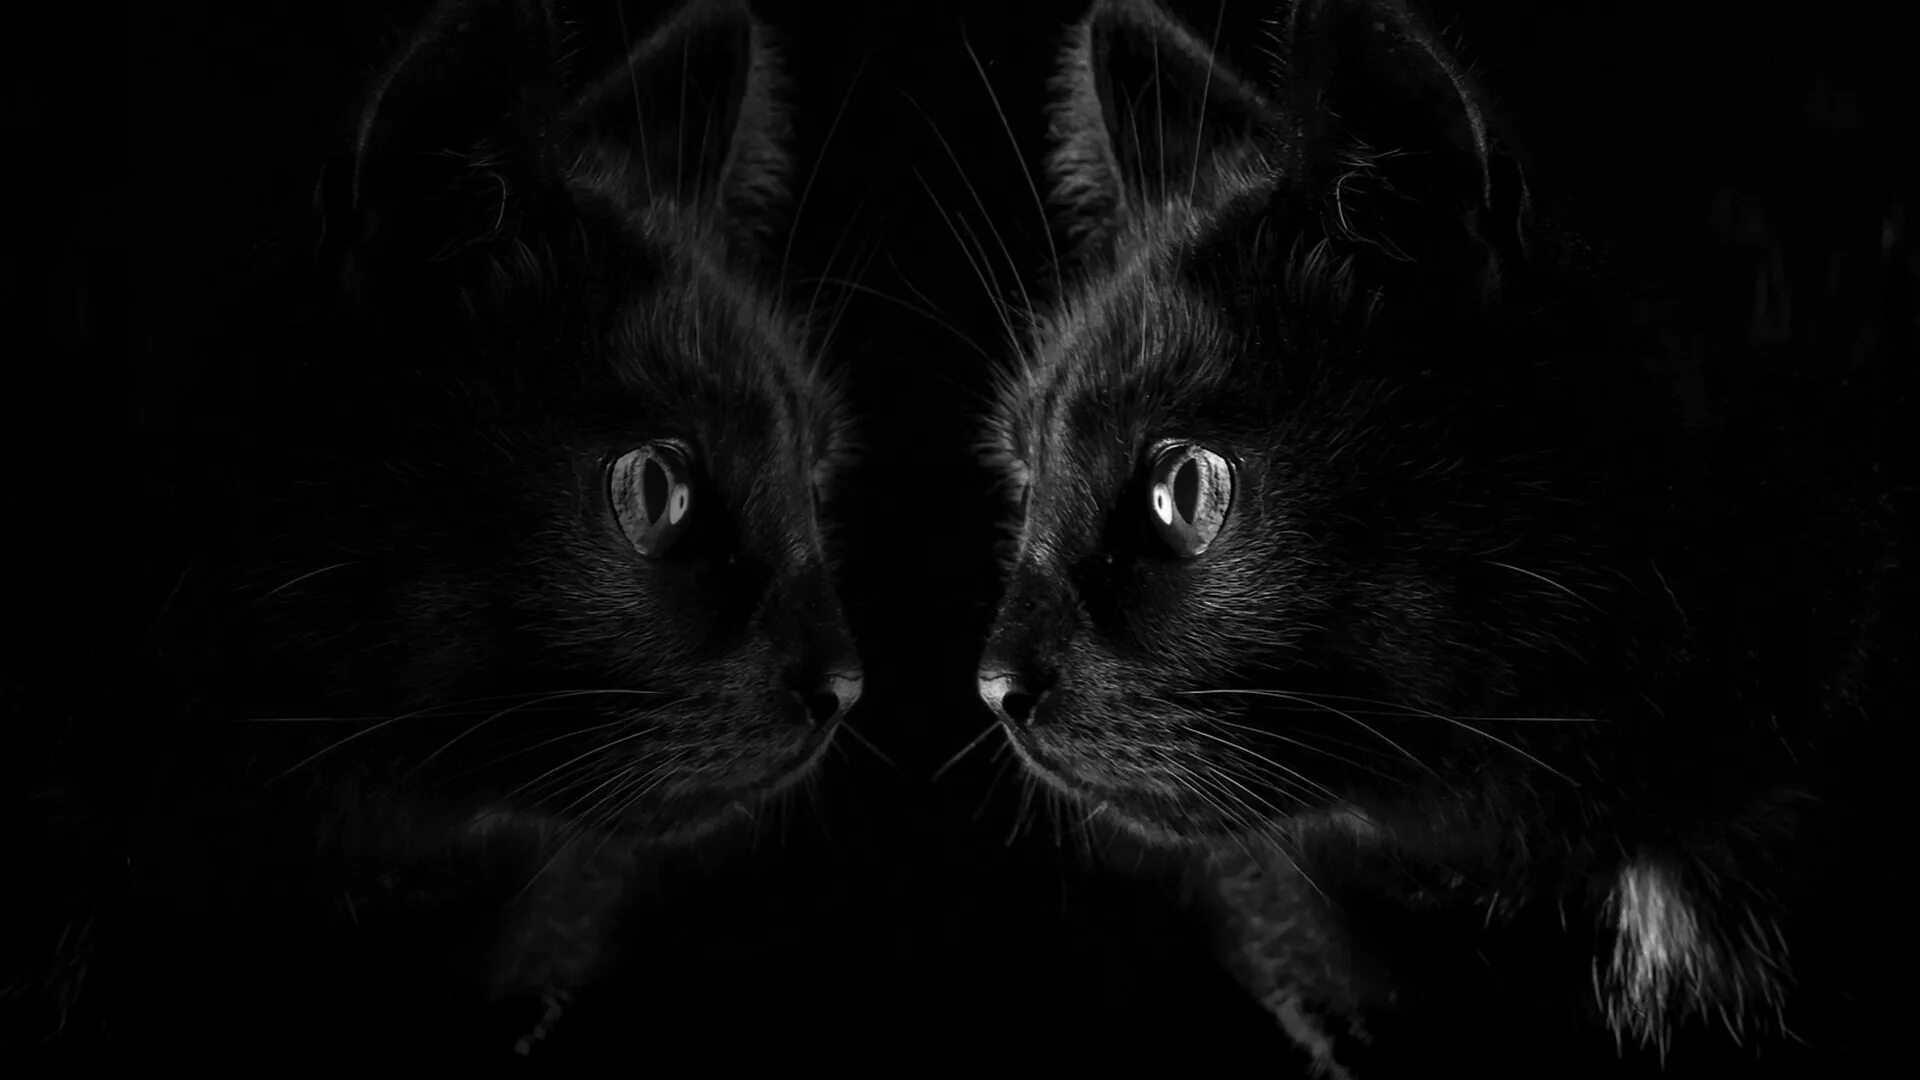 Обои темные черные. Черная кошка. Черное на черном фоне. Черная кошка обои. Черная кошка на черном фоне.